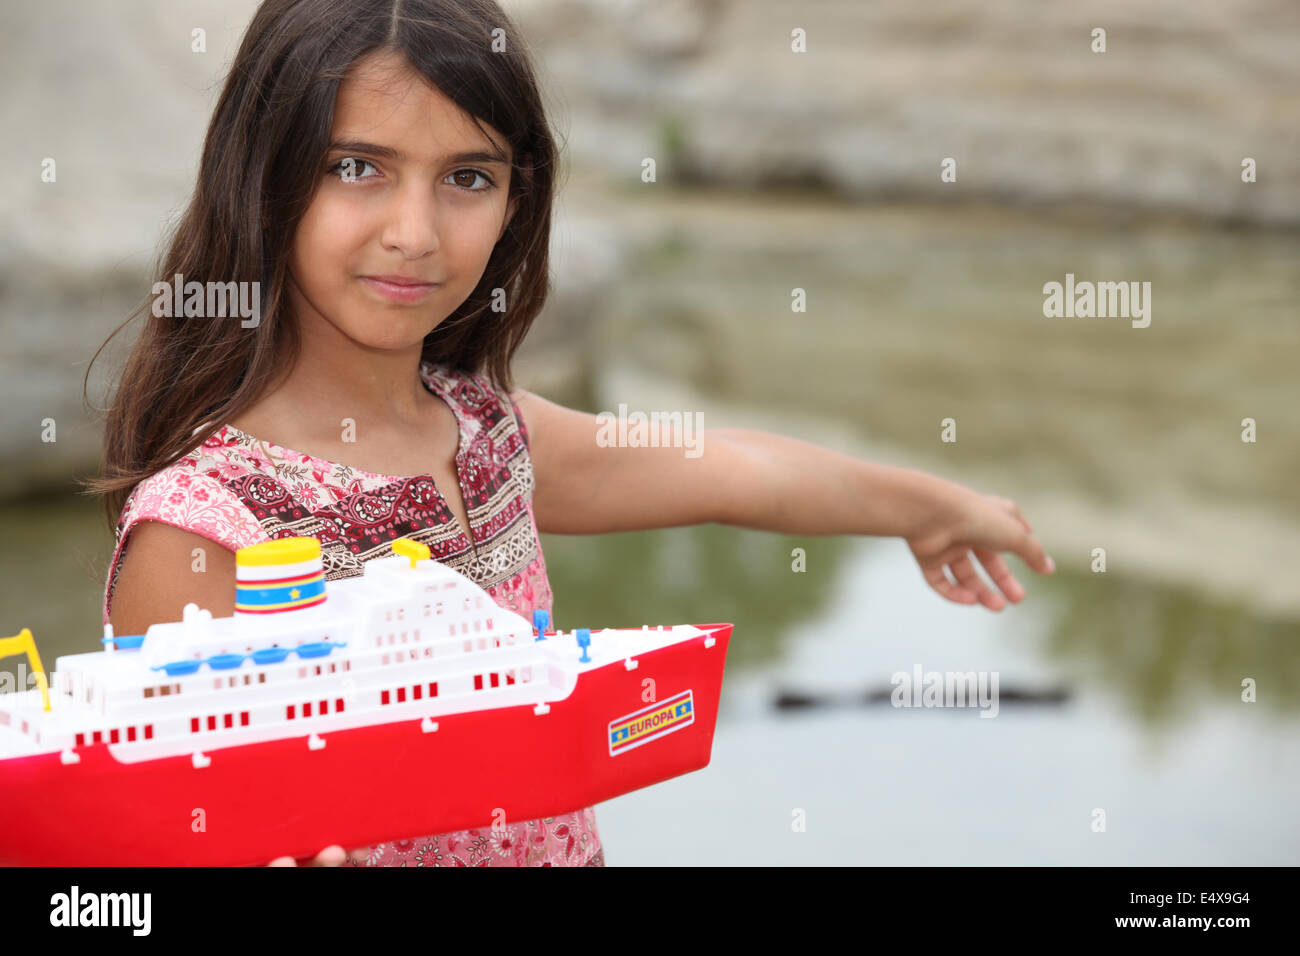 Petite fille jouant avec un bateau jouet Banque D'Images